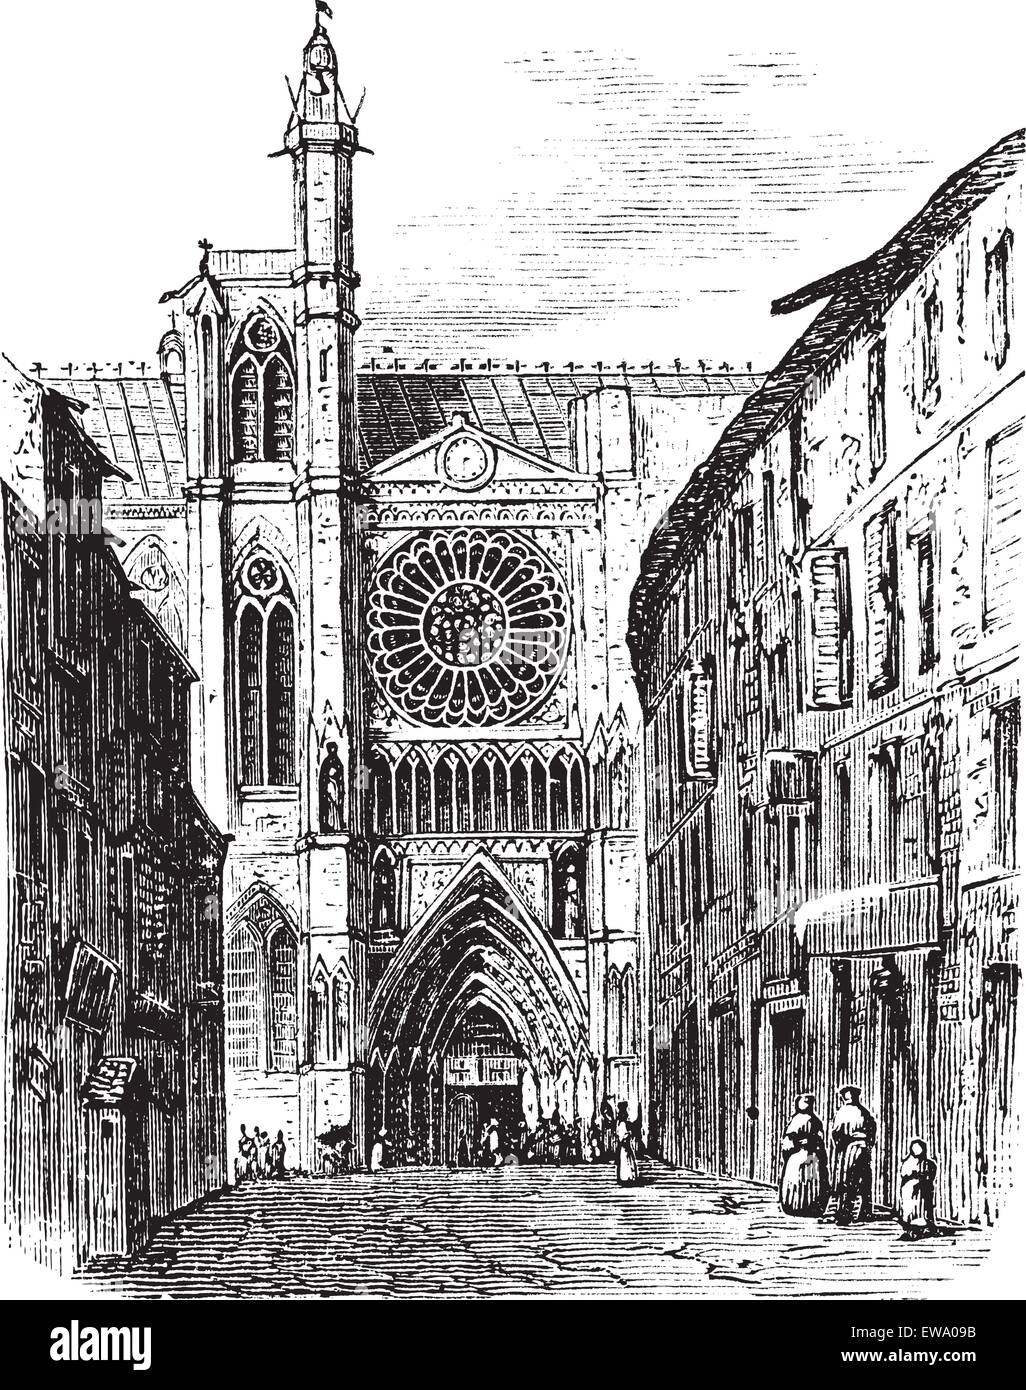 Clermont-Ferrand Kathedrale, in der Auvergne, Frankreich, in den 1890er Jahren, vintage Gravur. Alte eingravierte Darstellung der Clermont-Ferrand Kathedrale. Stock Vektor